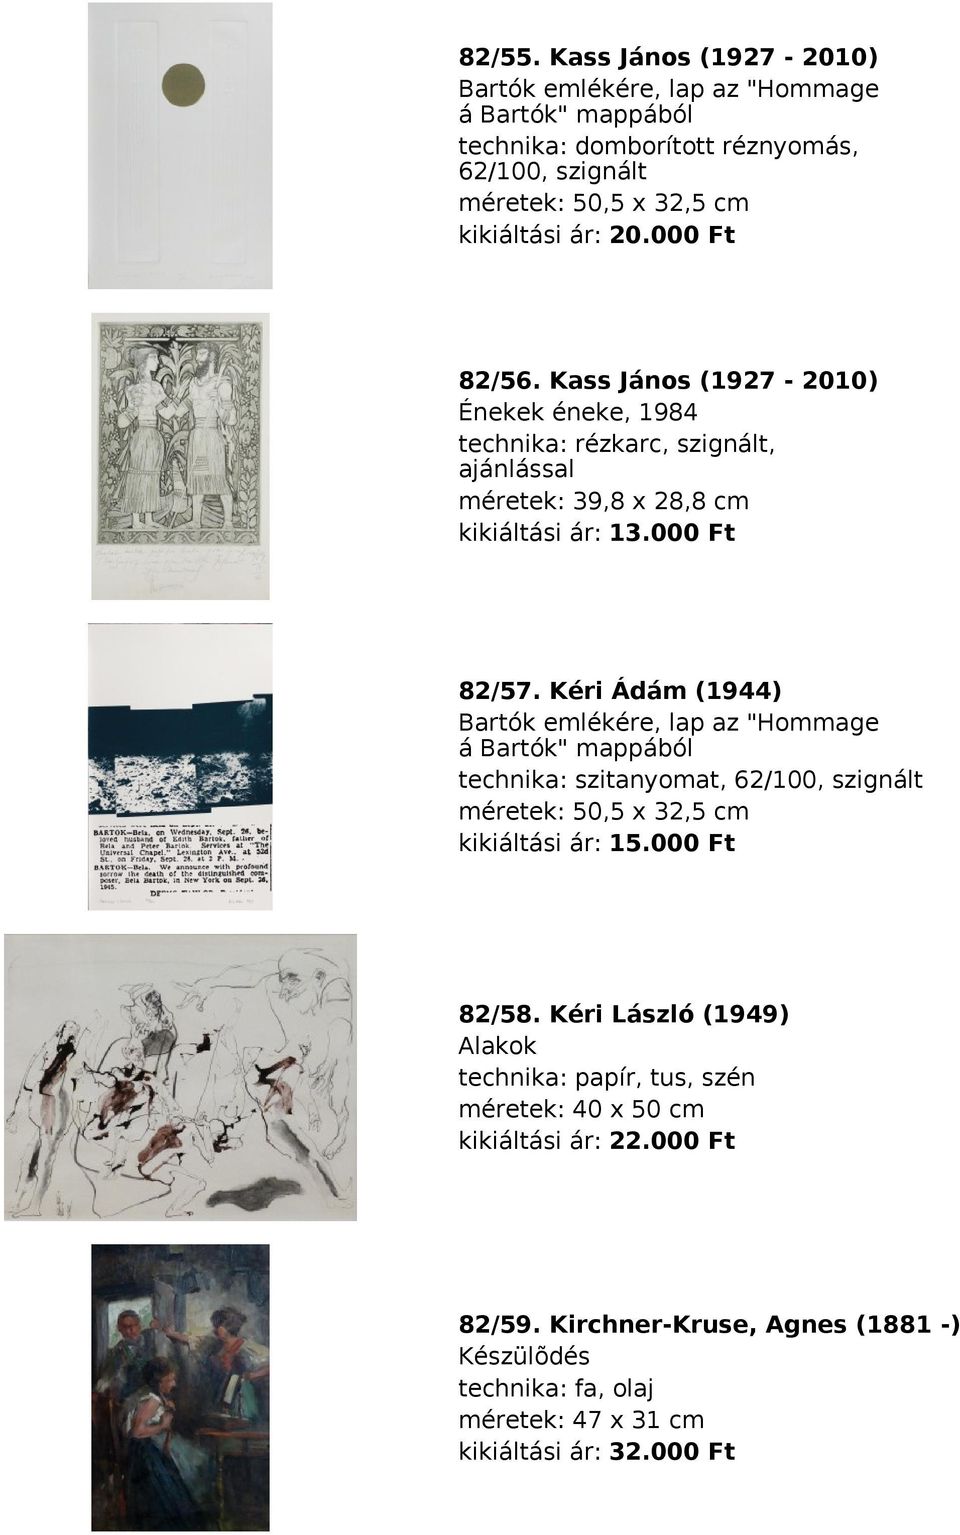 Kéri Ádám (1944) Bartók emlékére, lap az "Hommage á Bartók" mappából technika: szitanyomat, 62/100, szignált méretek: 50,5 x 32,5 cm kikiáltási ár: 15.000 Ft 82/58.